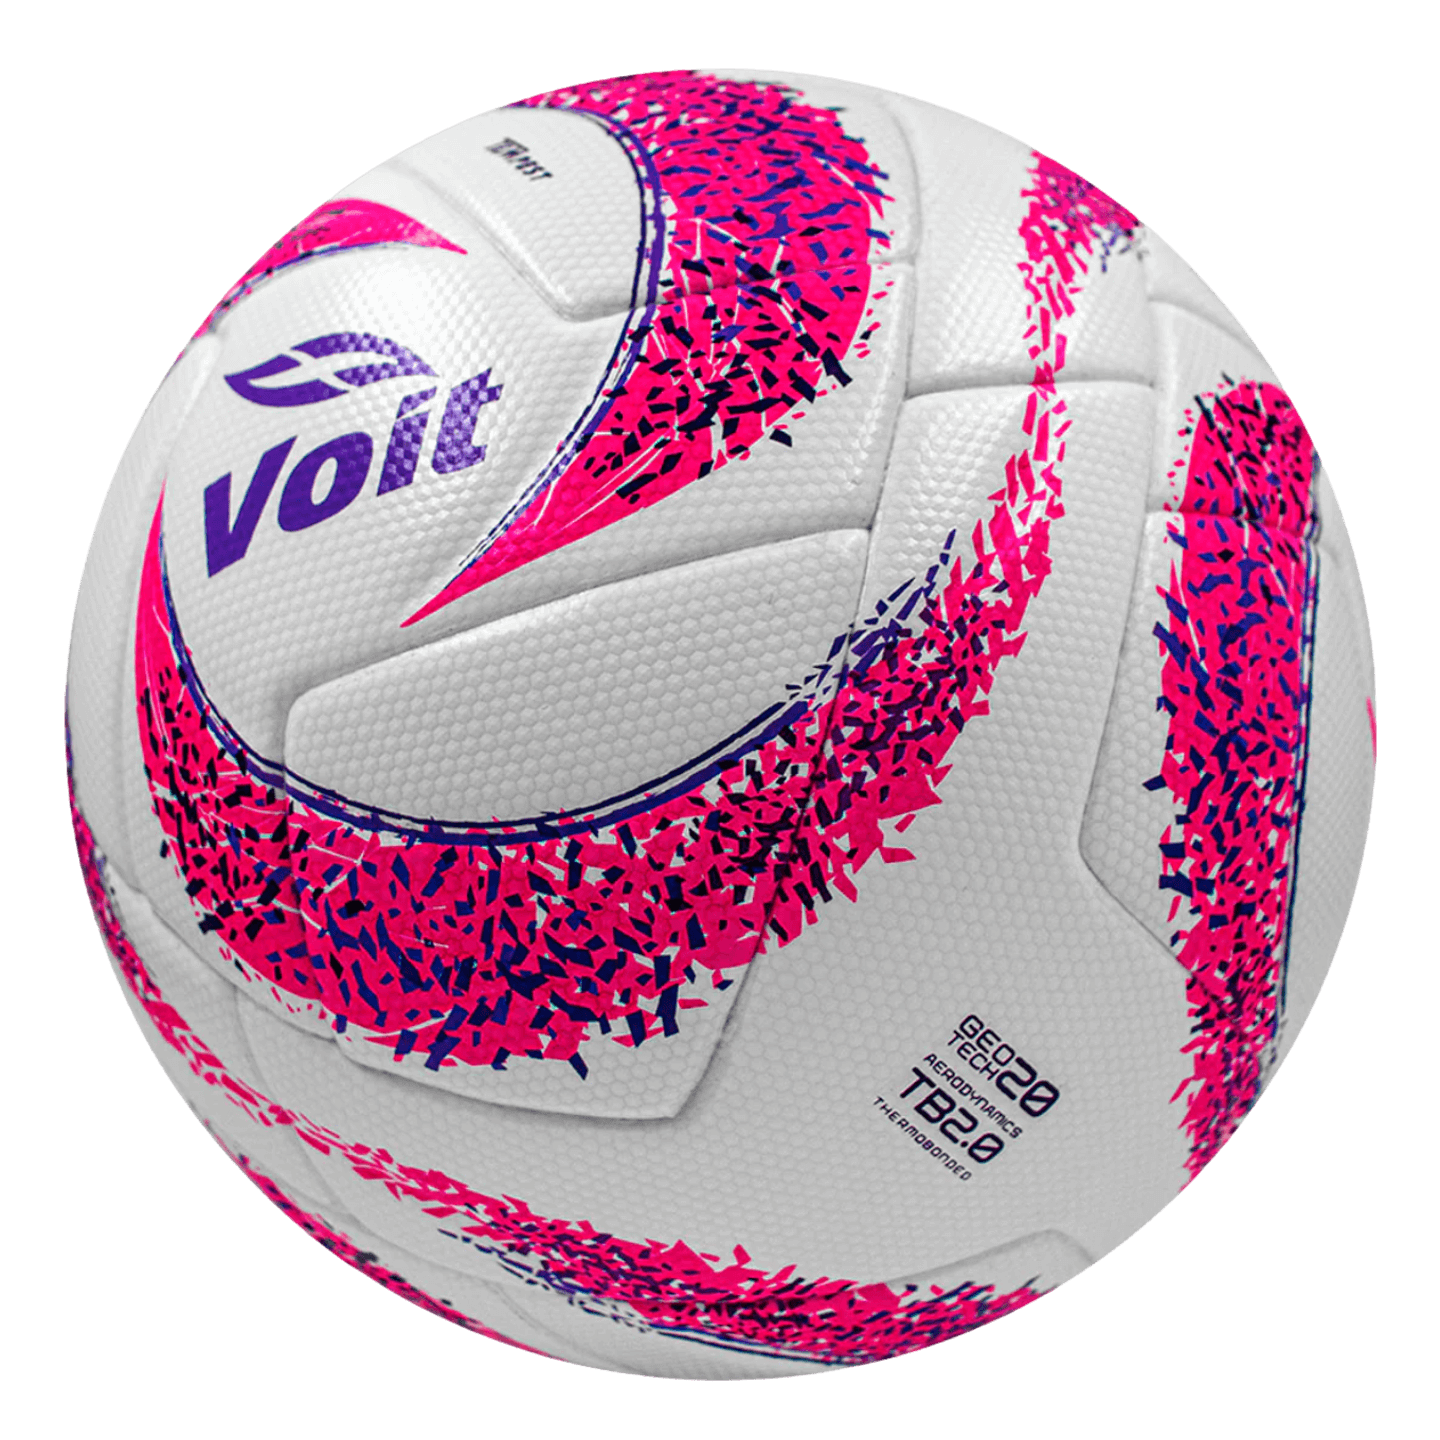 Si può, Pallone da calcio ufficiale Voit Tempest Pink Apertura 23